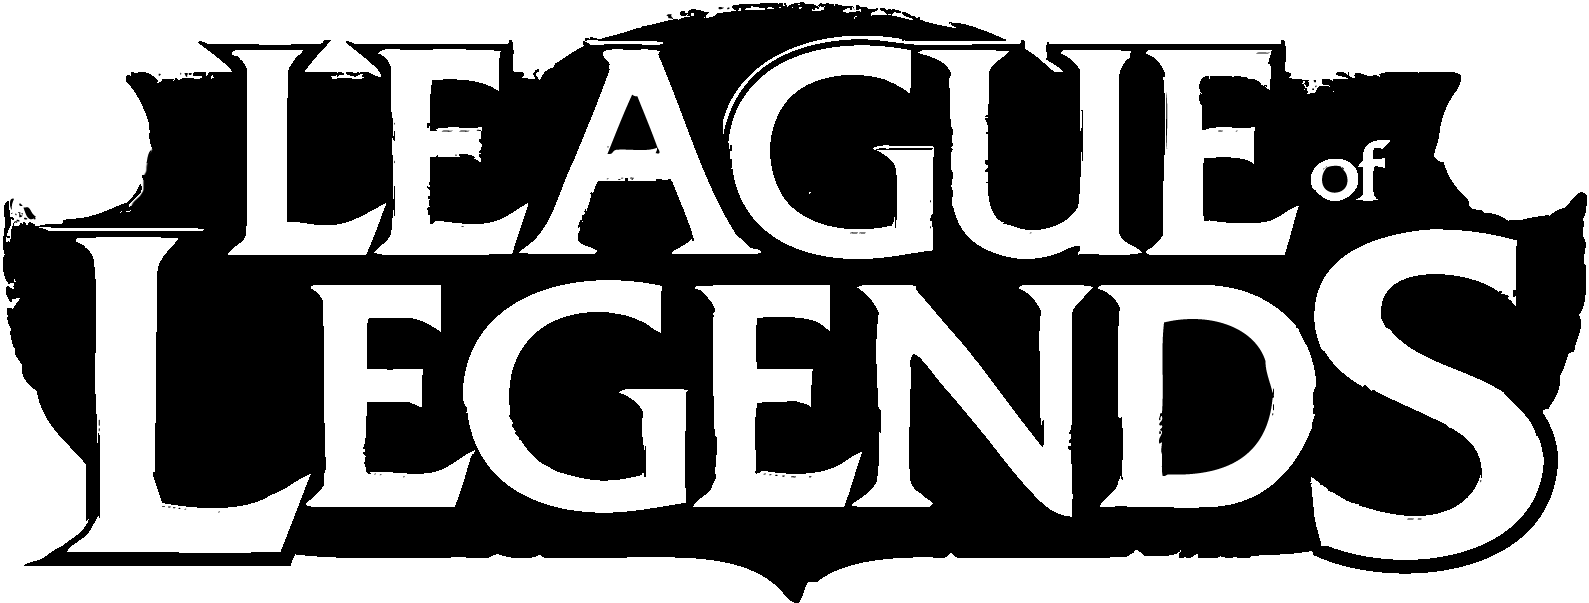 Ligue de légendes logo PNG HD